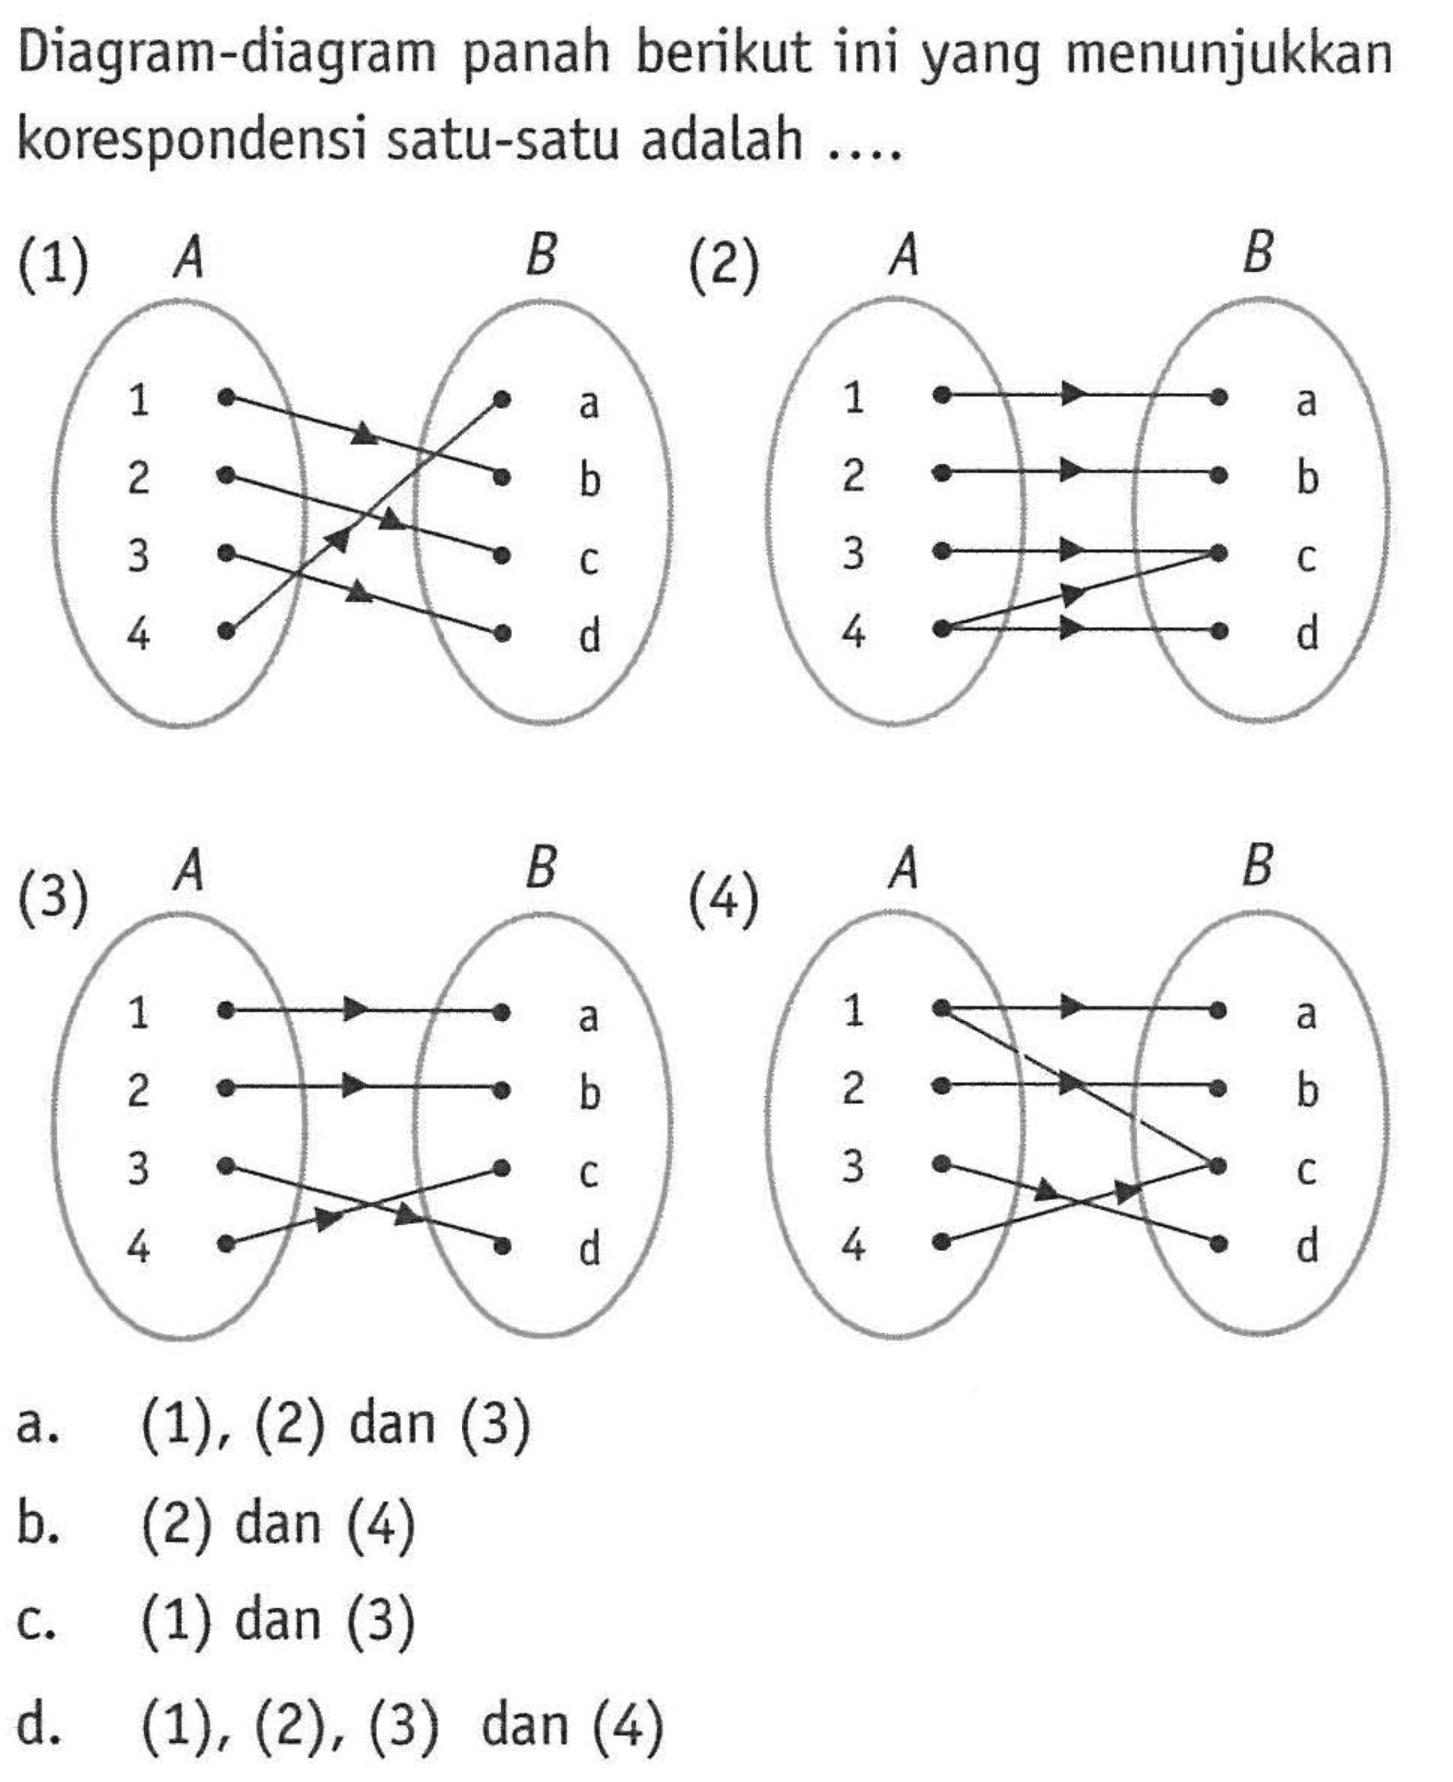 Diagram-diagram panah berikut ini yang menunjukkan korespondensi satu-satu adalah... (1) (2) (3) (4) A 1 2 3 4 B a b c d